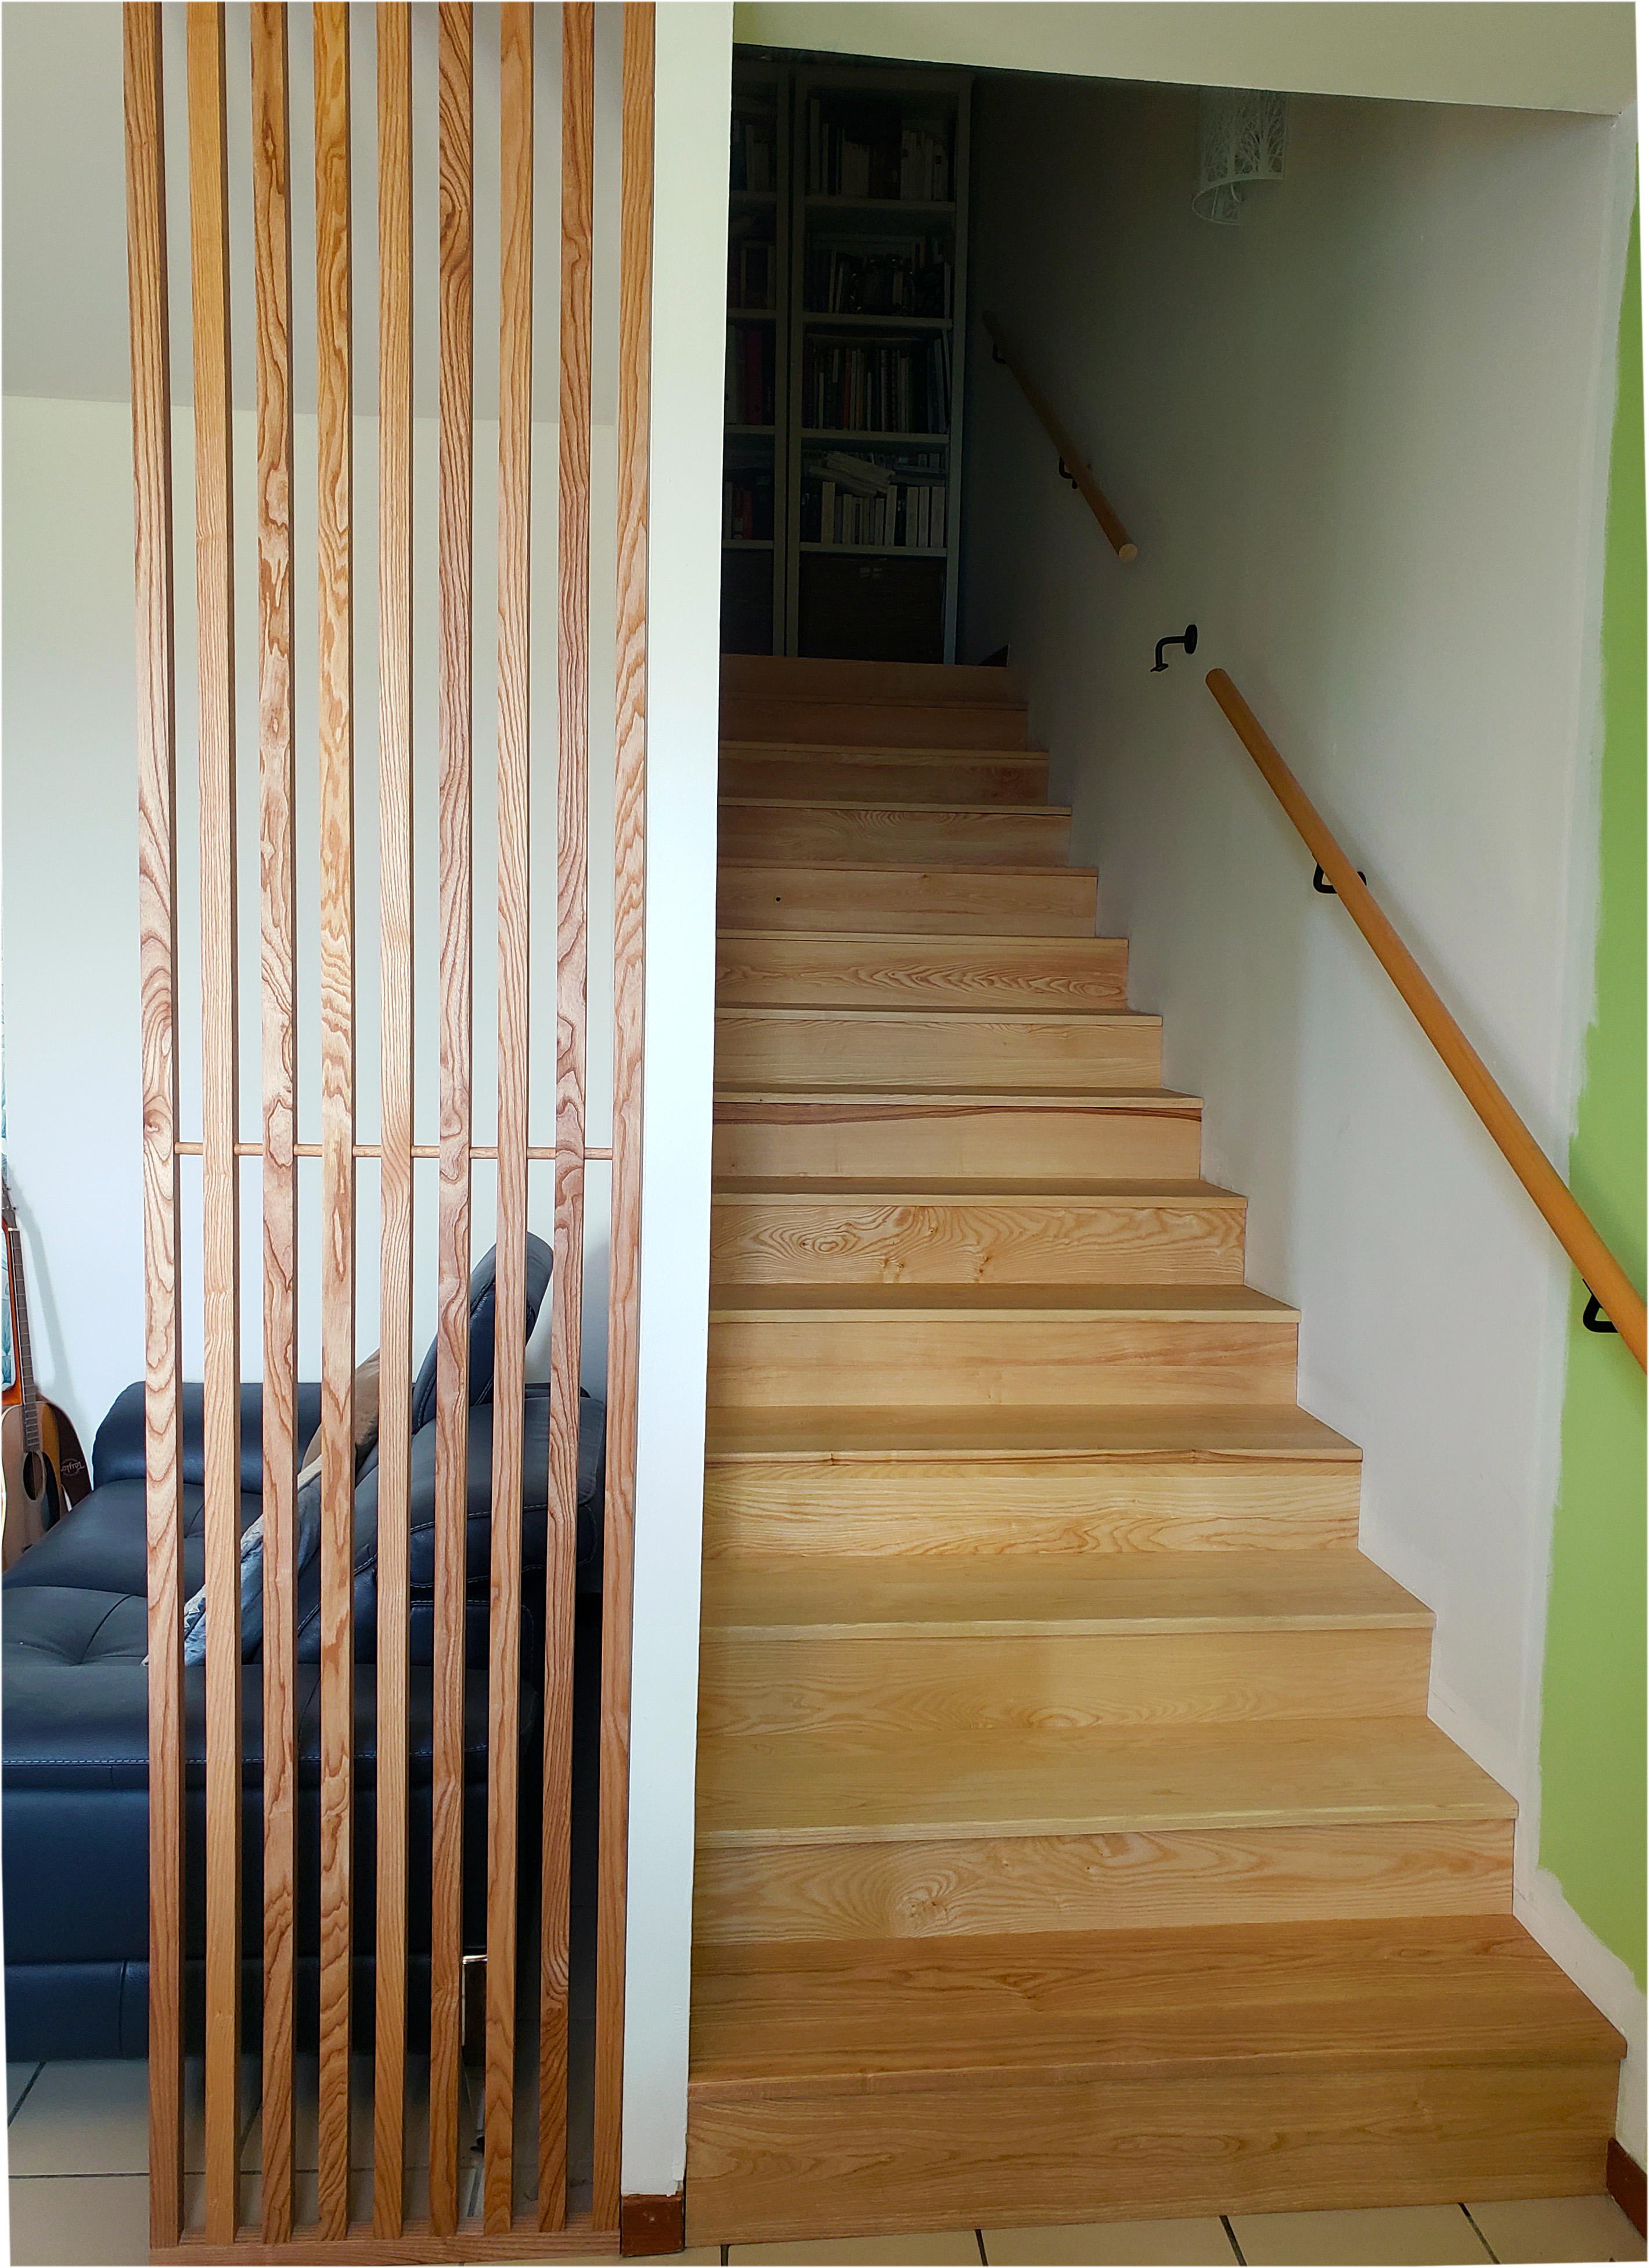 Escalier en frêne (collé sur escalier béton) et petit claustra en frêne également. Finition huilée.